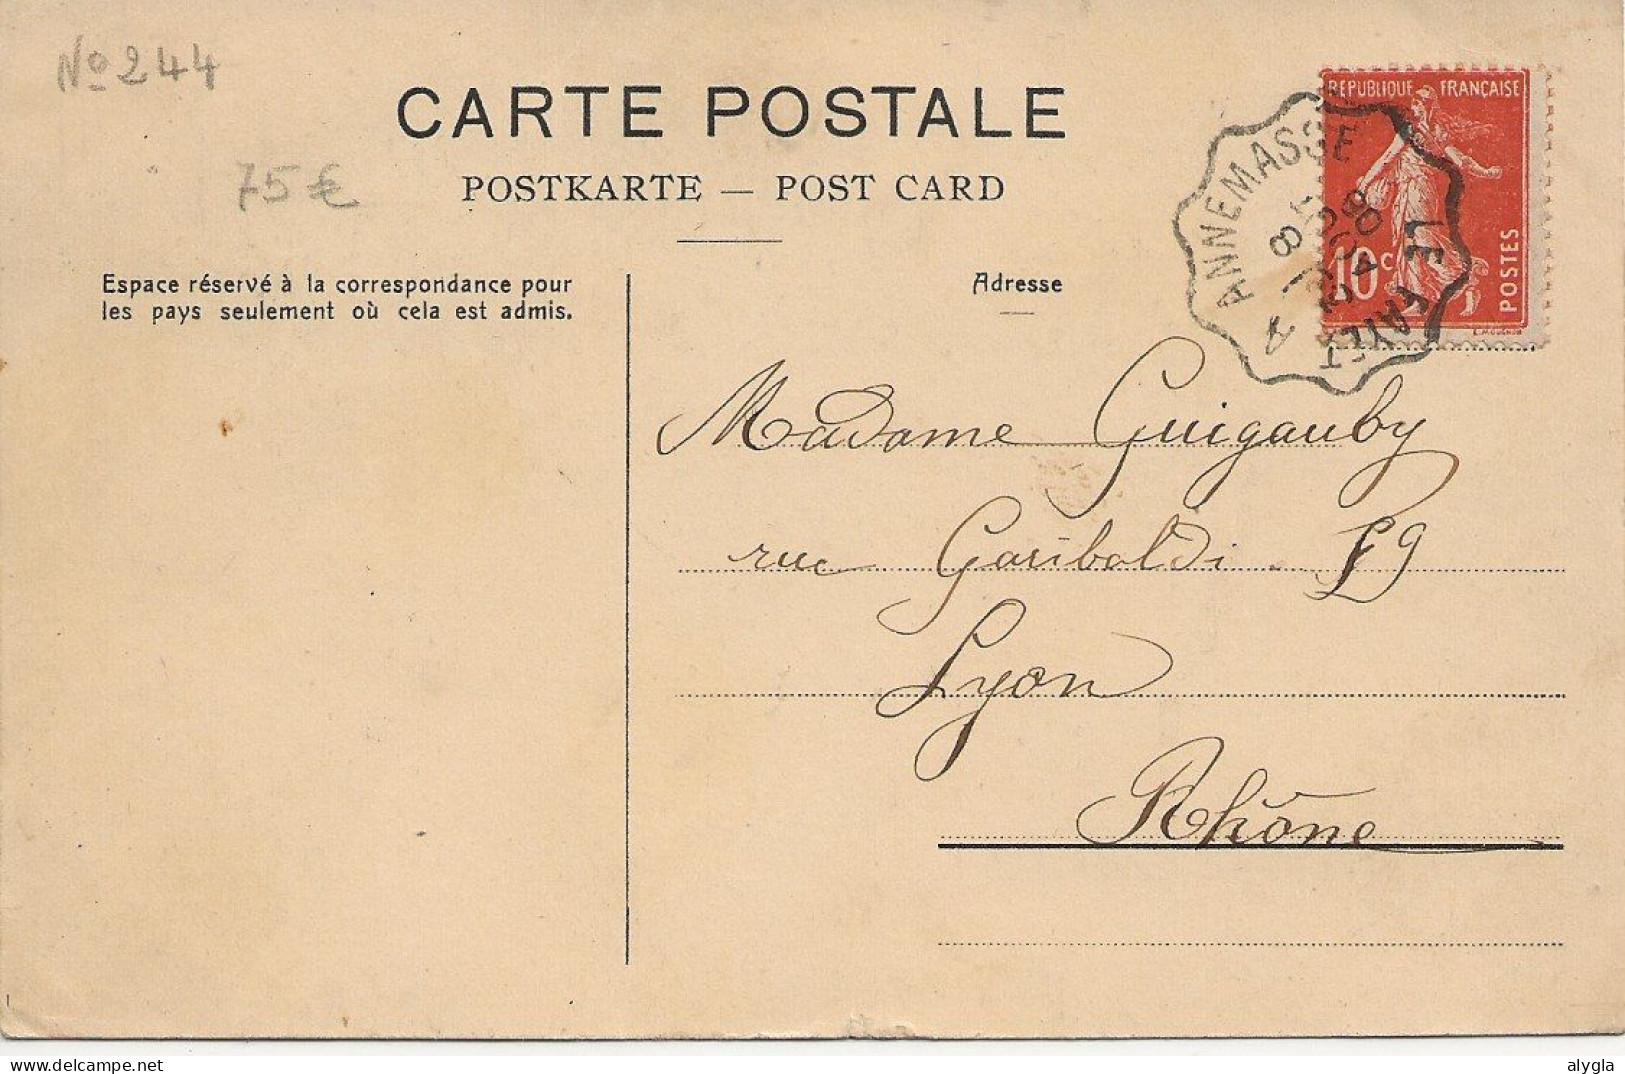 74 - ARGENTIERES - RARE CPA 1908 - Hôtel De La Couronne - Propr. Muller - Devouassoux. - Chamonix-Mont-Blanc